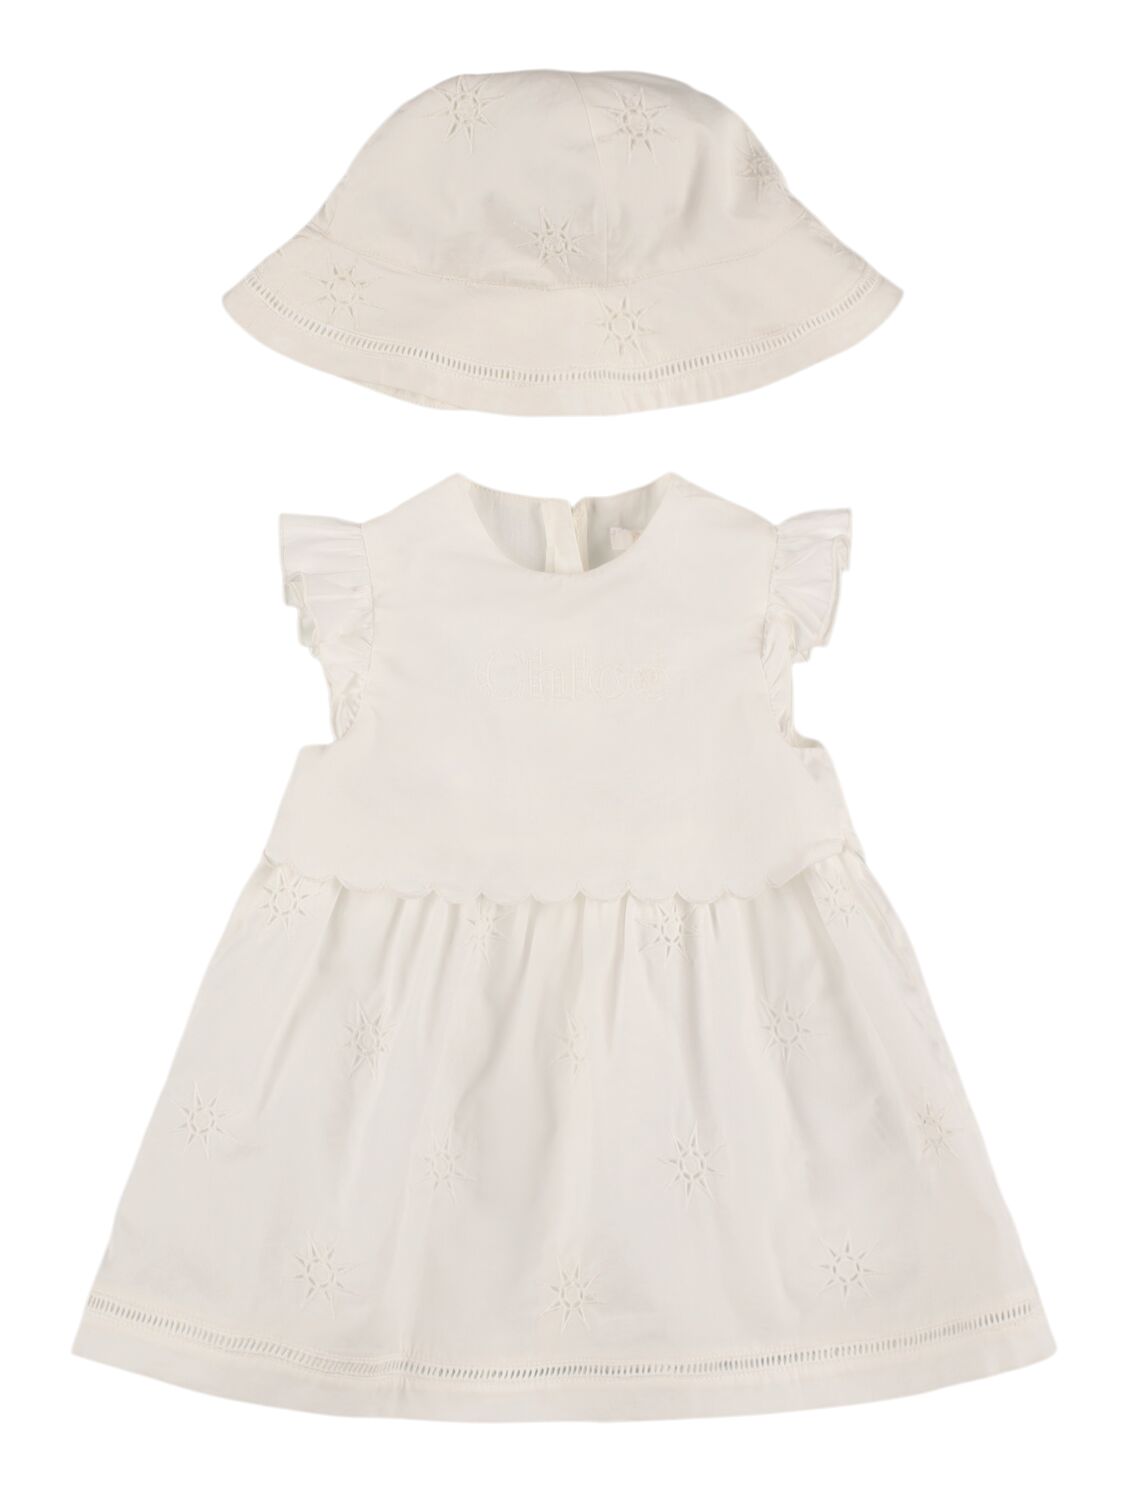 Chloé Babies' Cotton Poplin Dress & Hat In Off-white